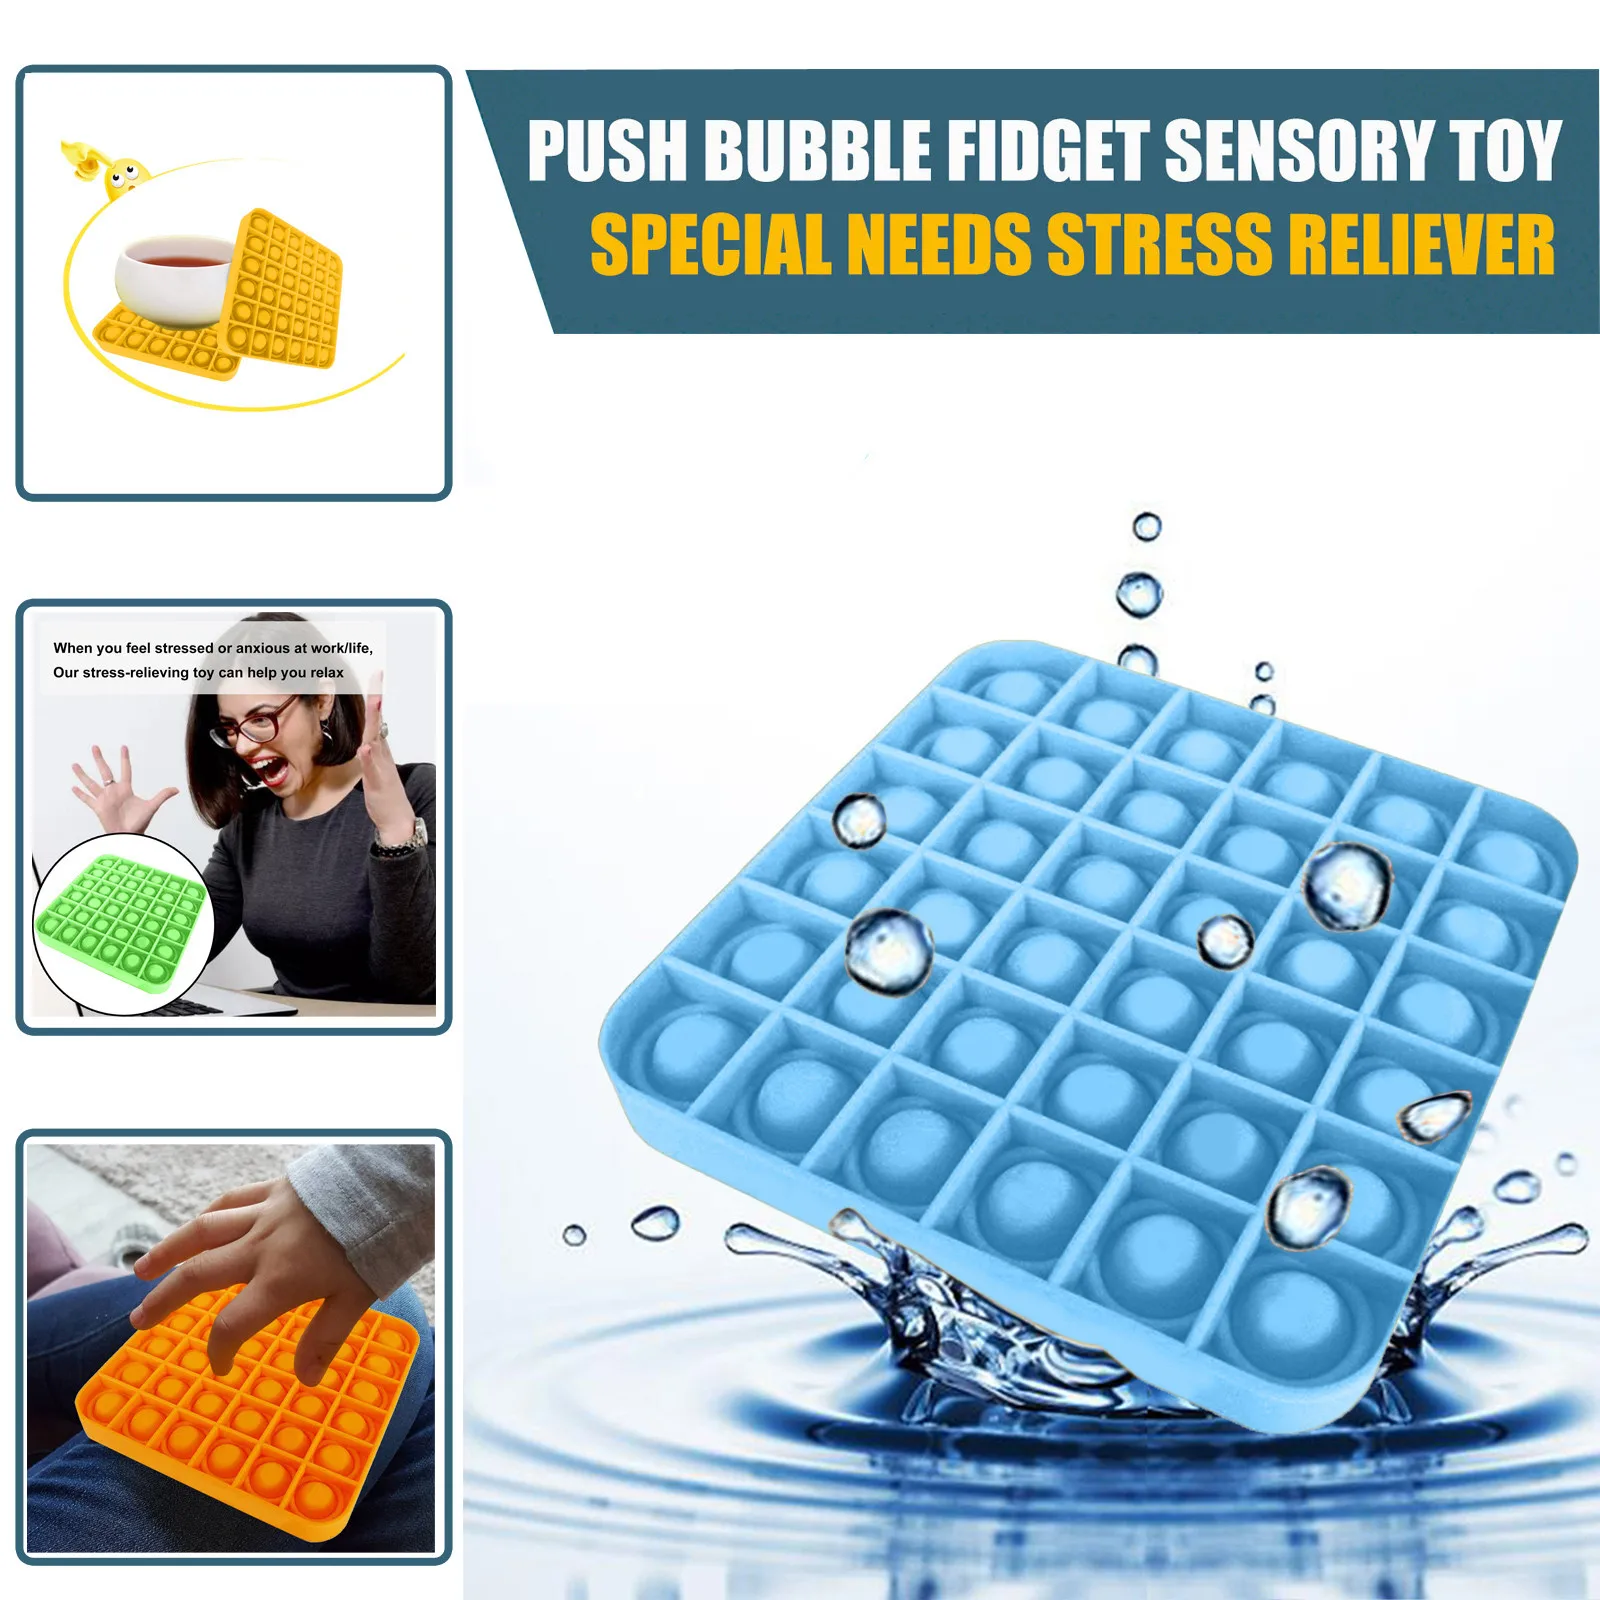 Empuje la Burbuja Fidget Sensorial Juguete Autismo Necesidades Especiales Calmante para el Estrés Rompecabezas juguetes de la novedad de juguete burbujas de aliviar la ansiedad de los juguetes 3